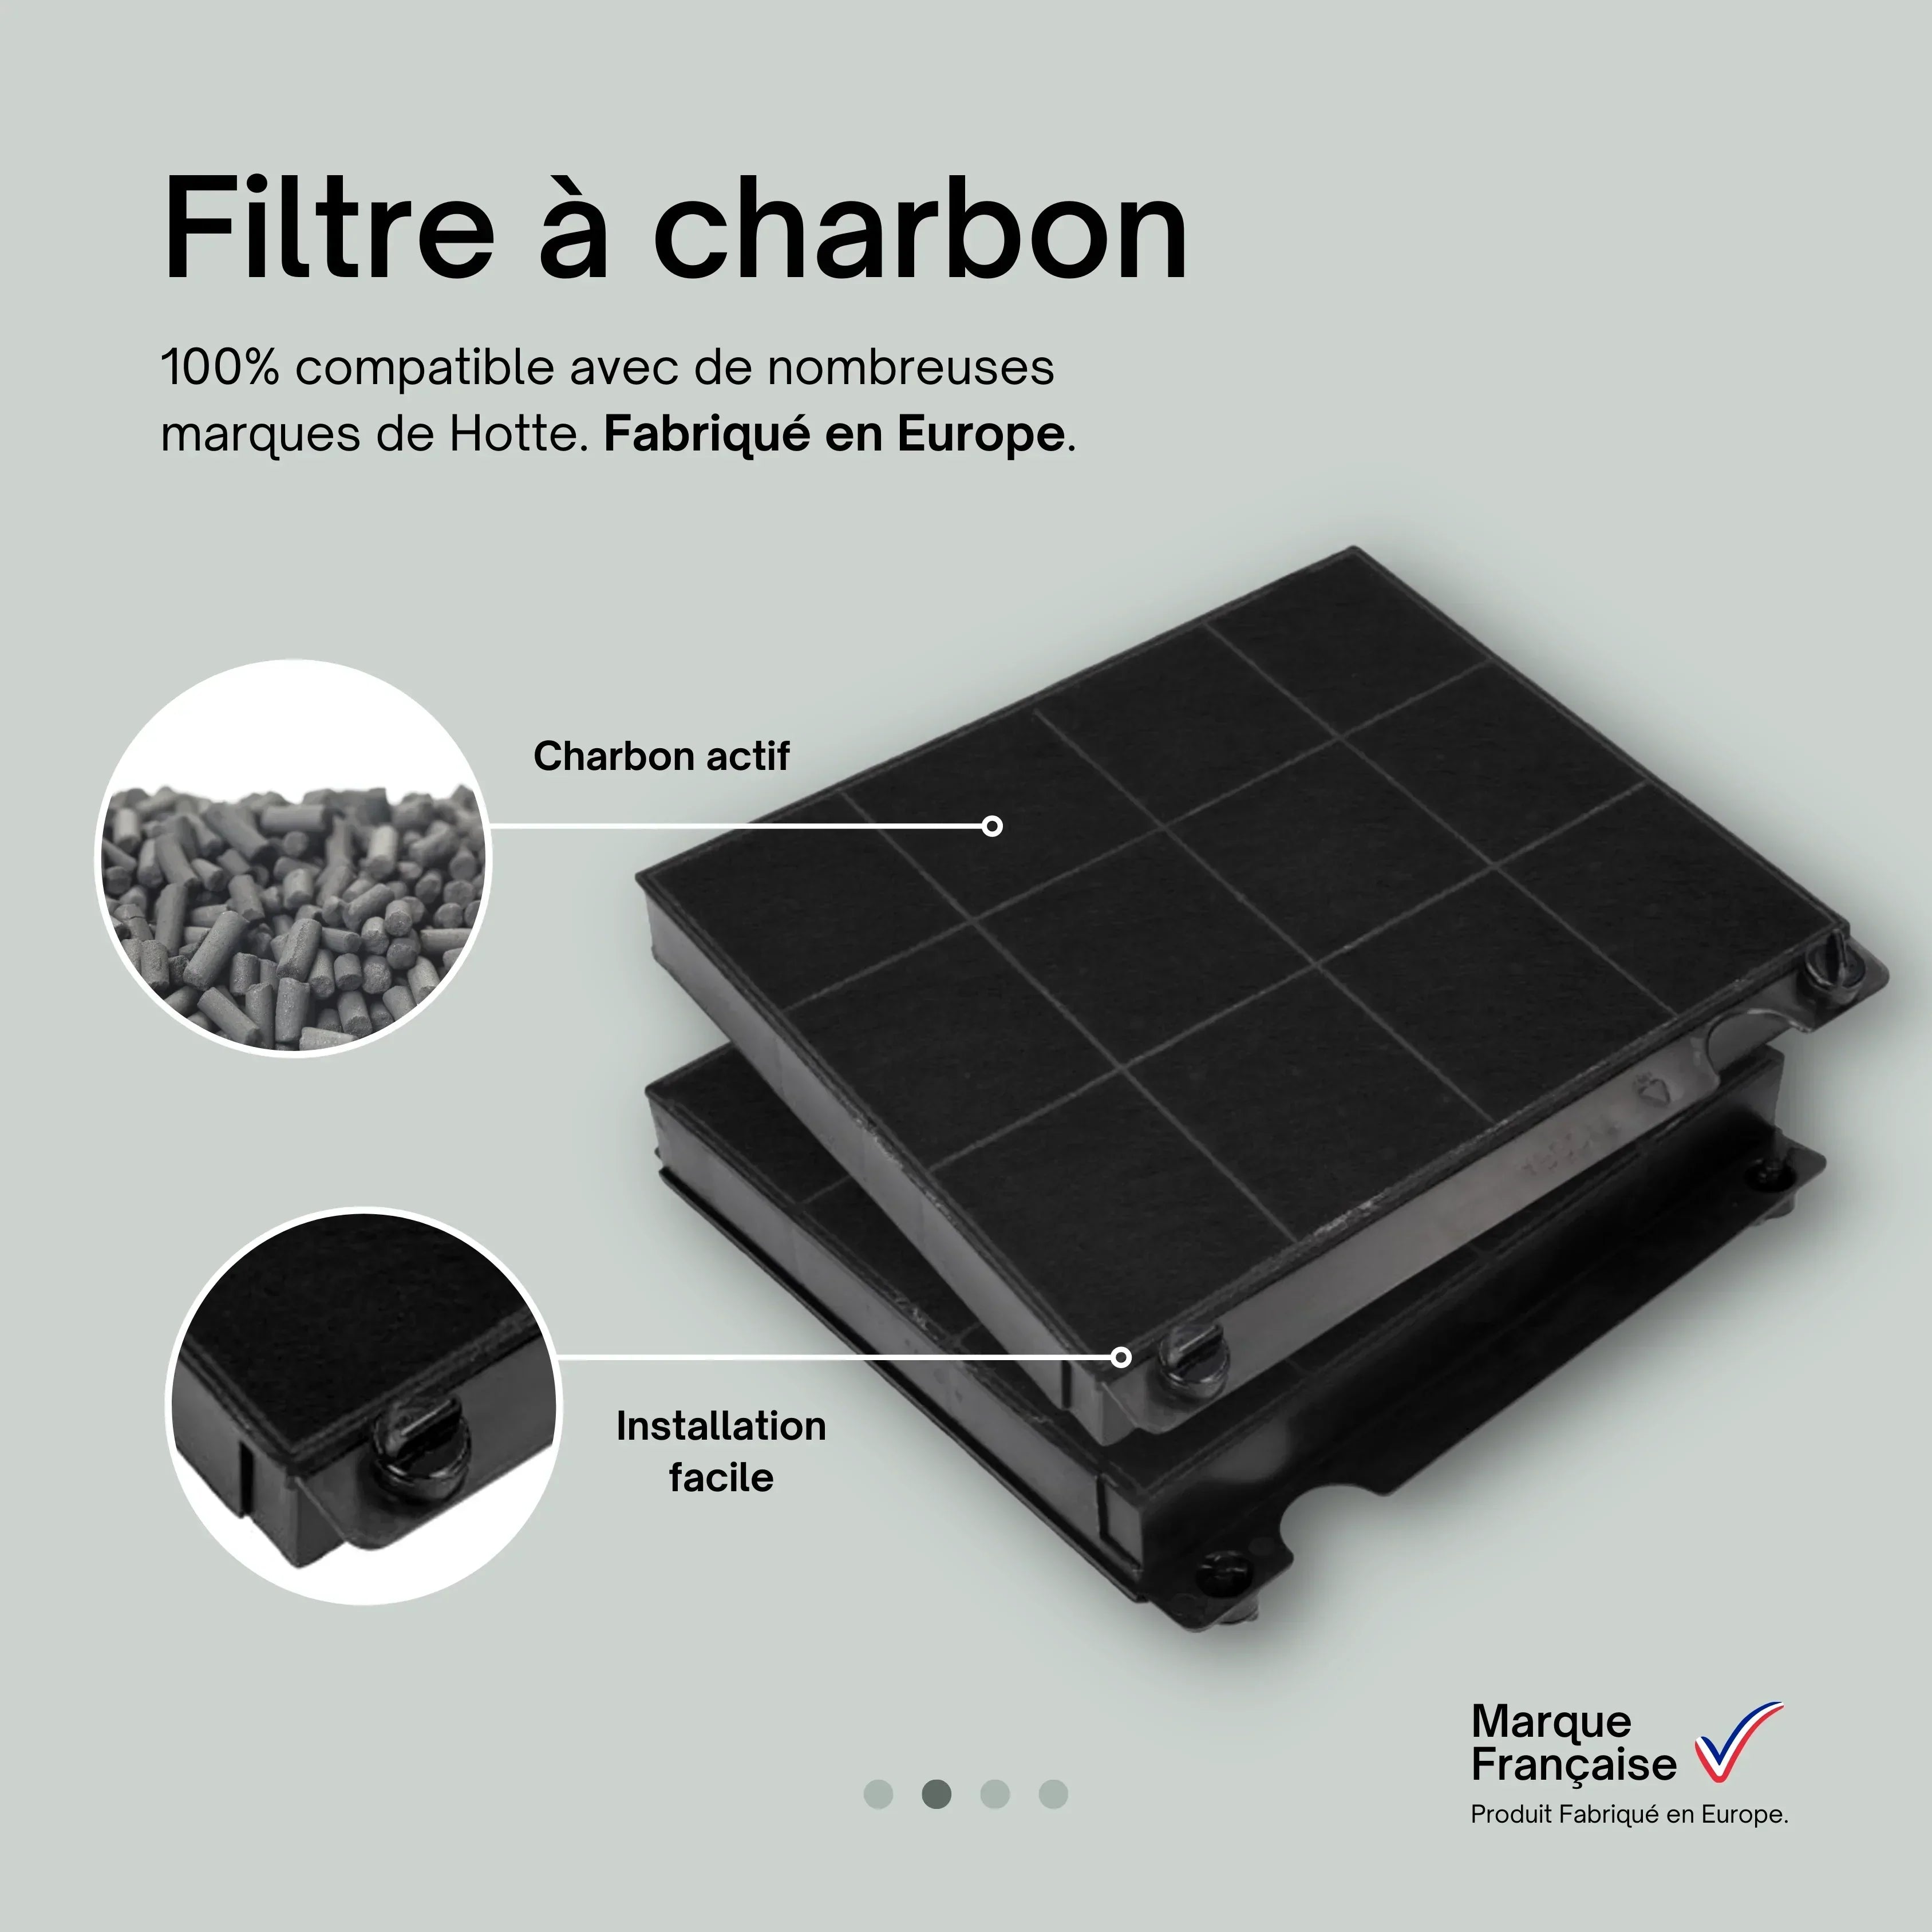 Hotpoint - Filtre charbon elica type 34 ø260x50mm pour hotte ariston -  Entretien - Rue du Commerce